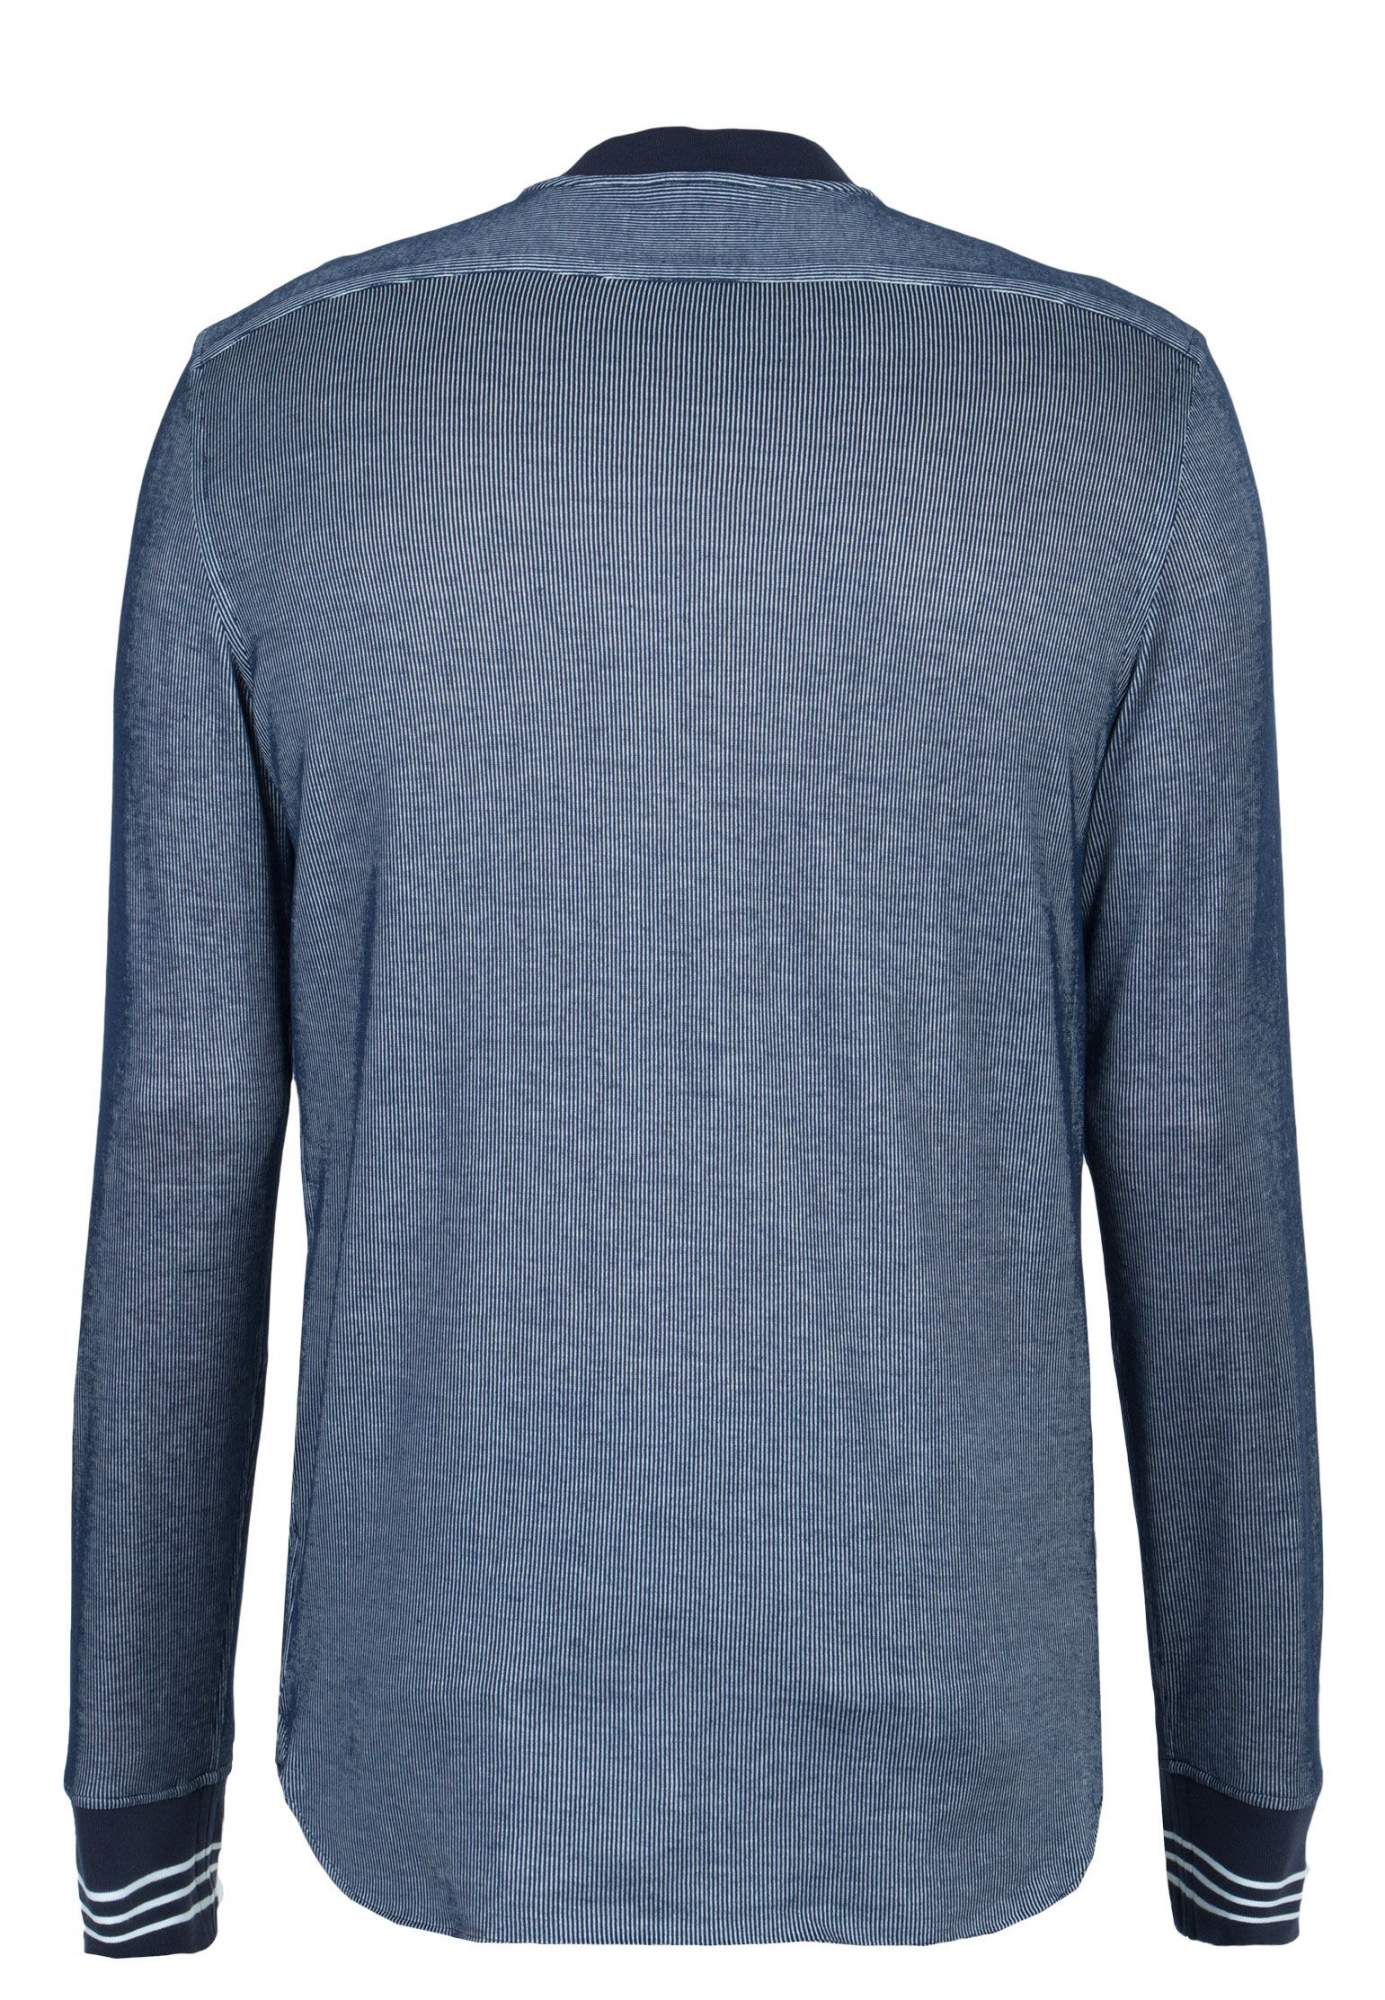 Рубашка мужская Emporio Armani 93811 синяя 44